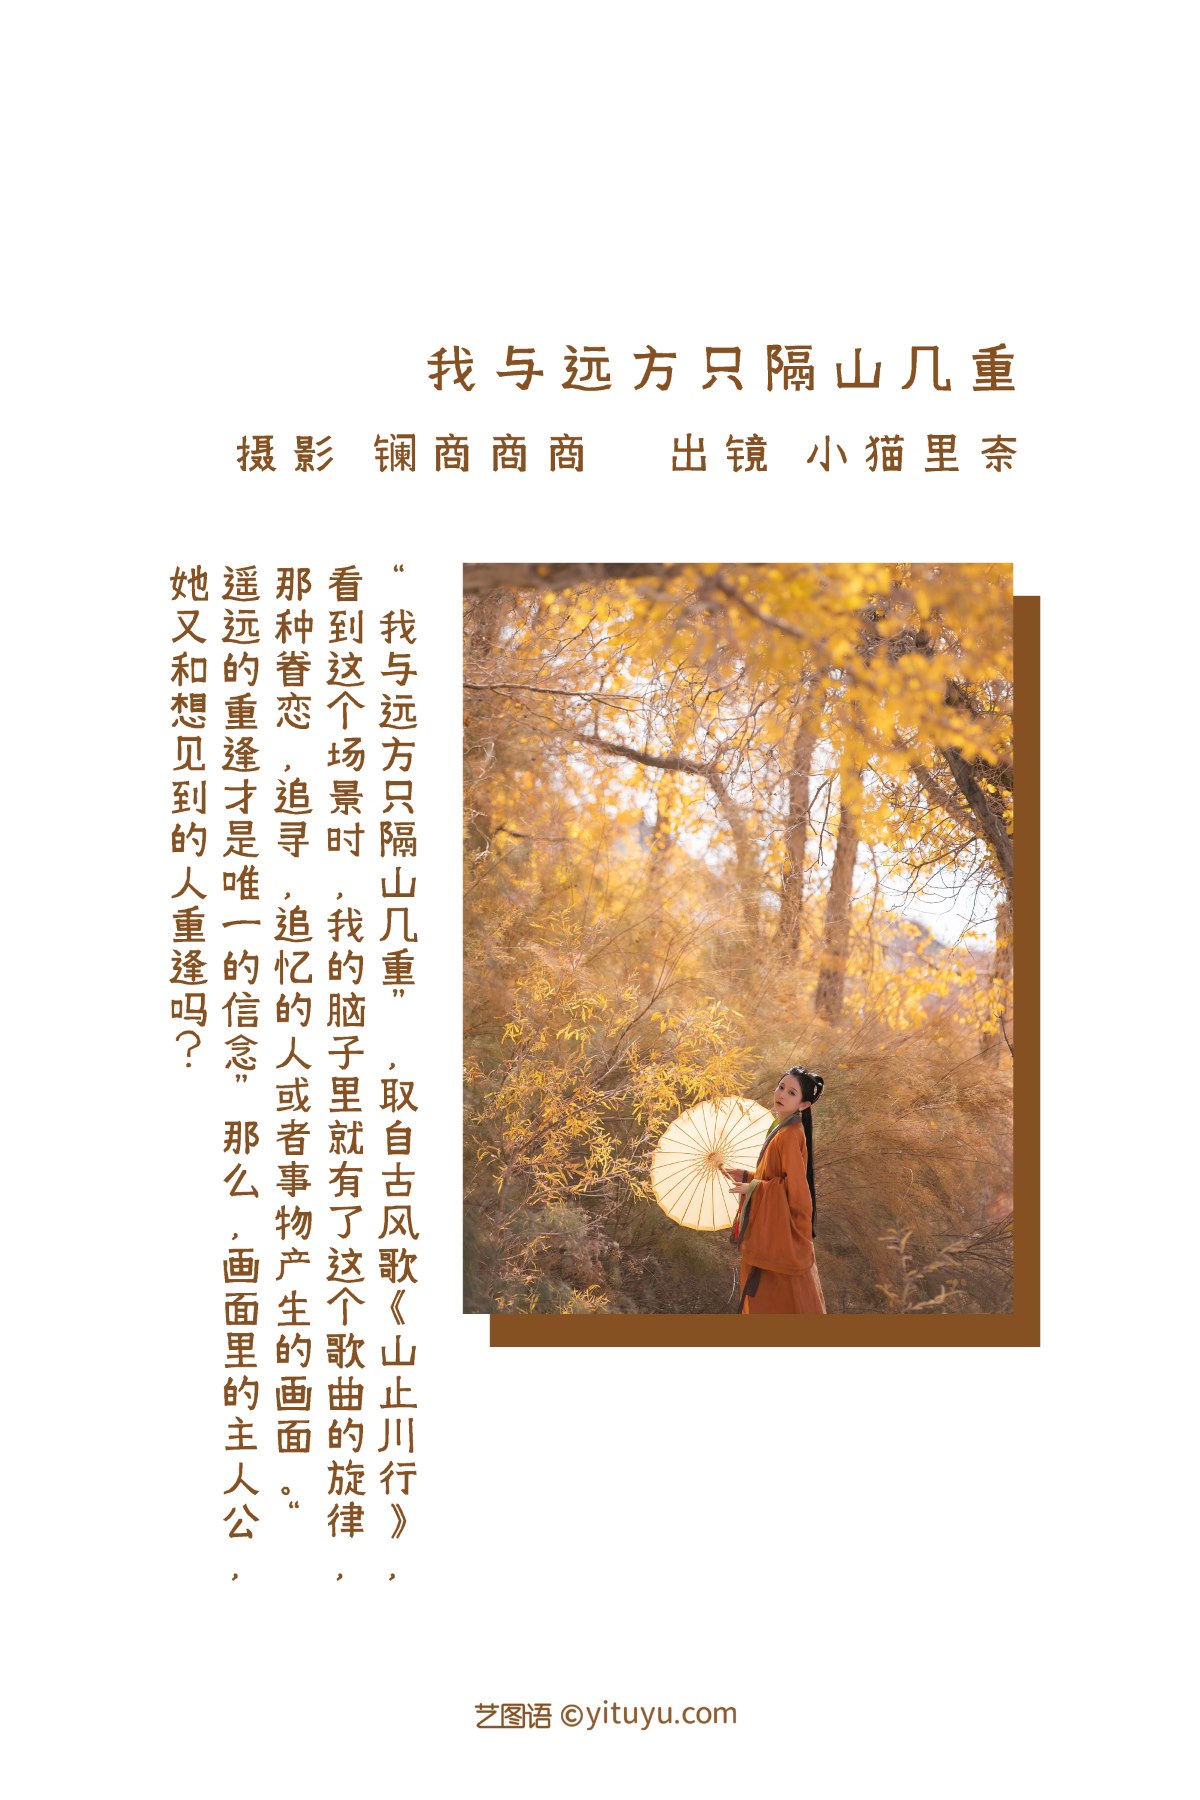 YiTuYu艺图语 Vol 2254 Xiao Neko Li Nai 0001 0412405202.jpg